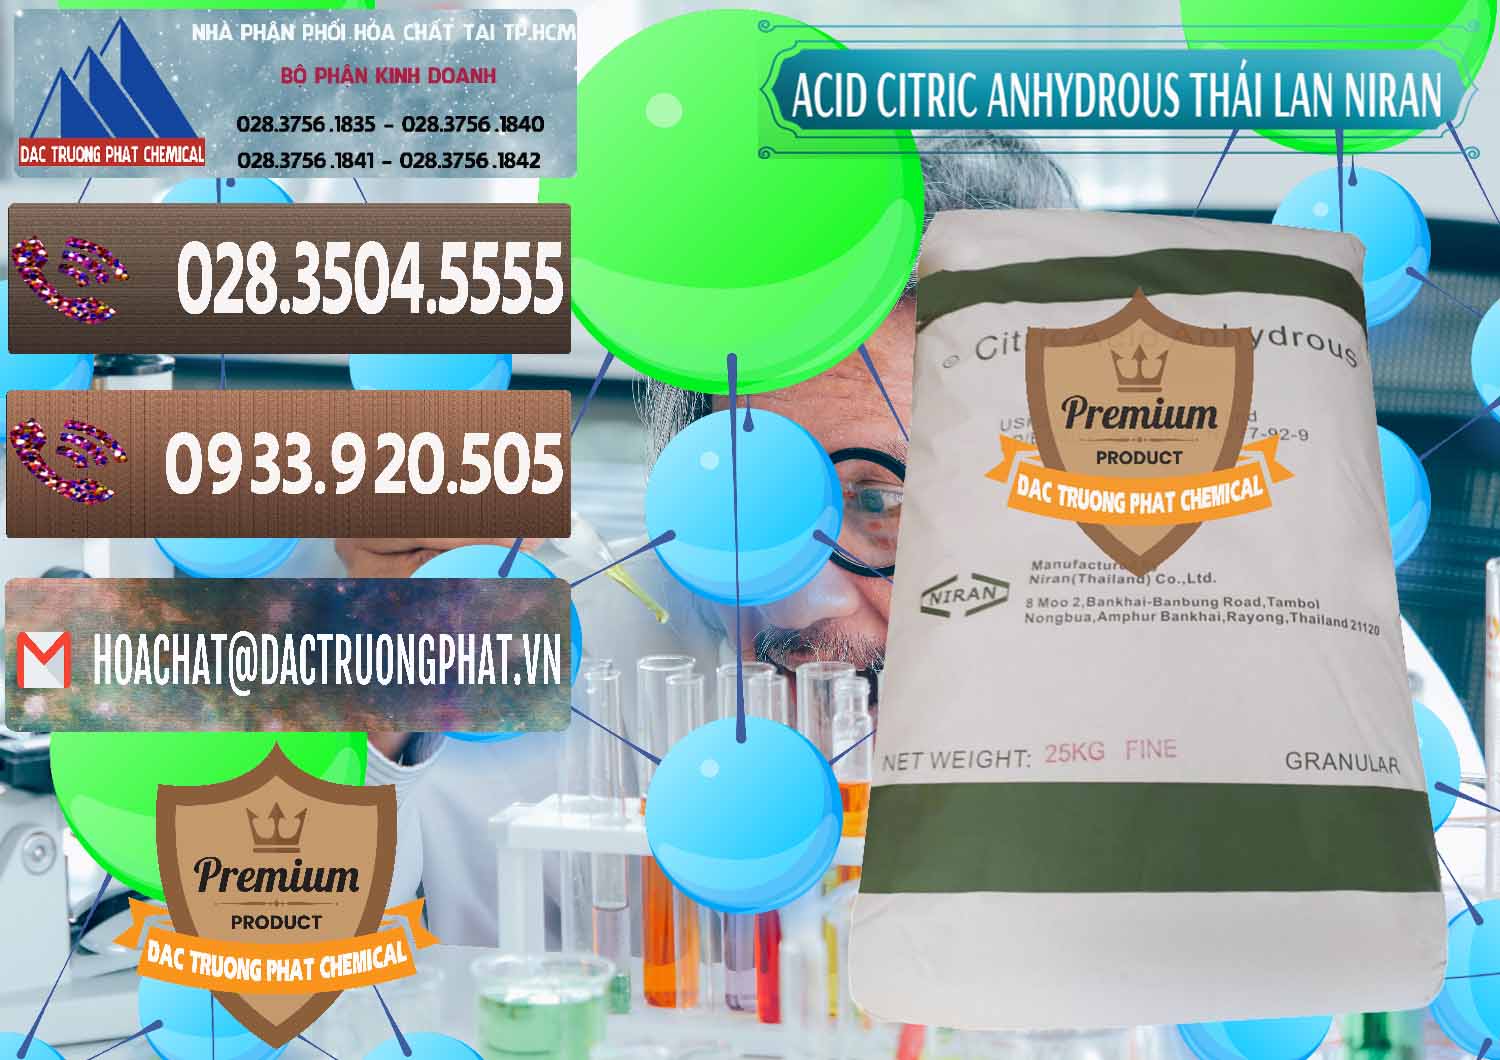 Chuyên nhập khẩu _ bán Acid Citric - Axit Citric Anhydrous - Thái Lan Niran - 0231 - Công ty chuyên phân phối - nhập khẩu hóa chất tại TP.HCM - hoachatviet.net